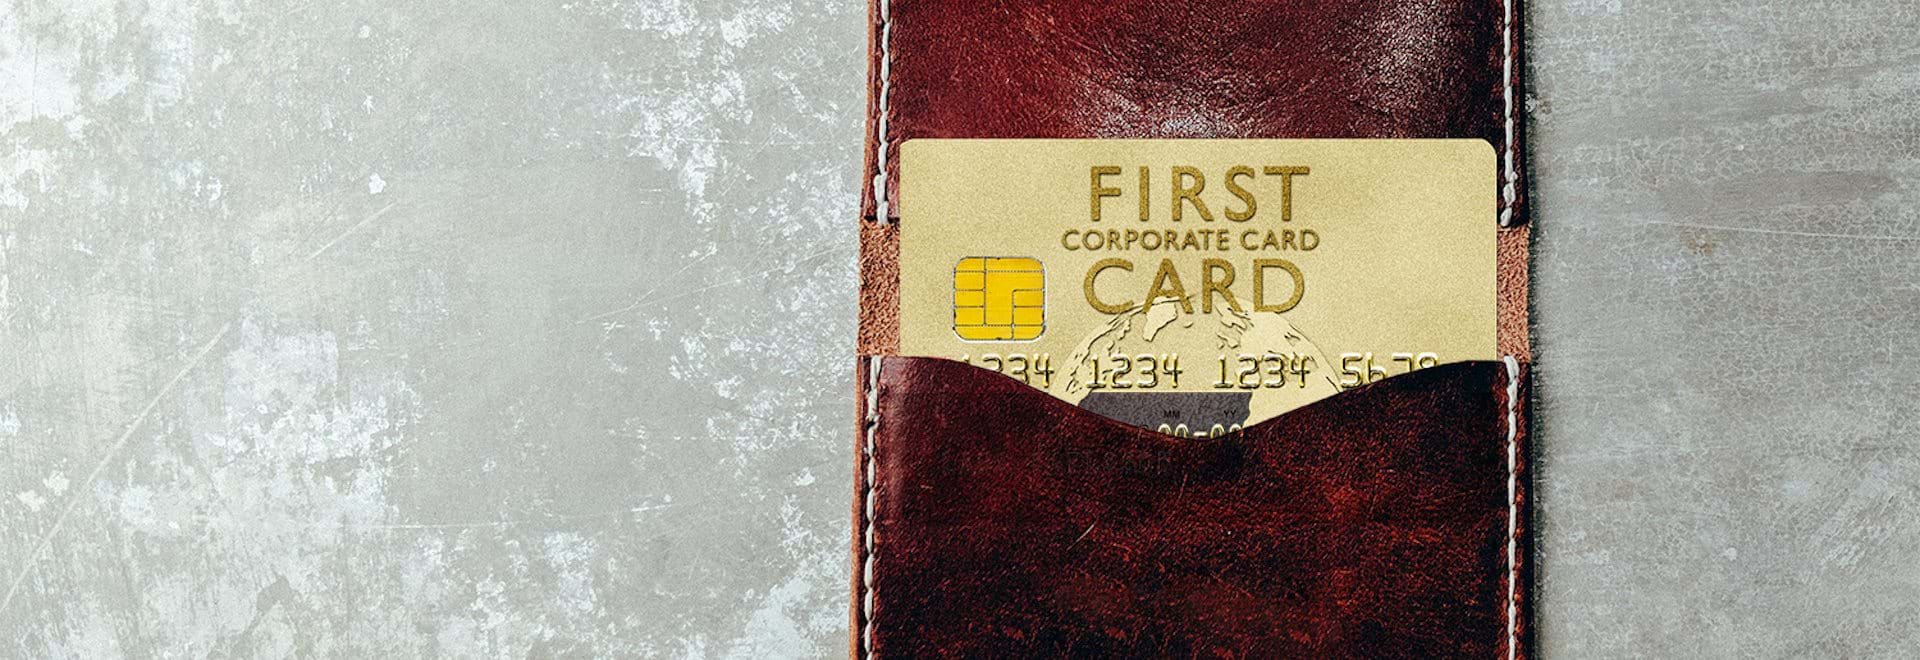 Billiga kreditkort med First Card genom Visma Advantage